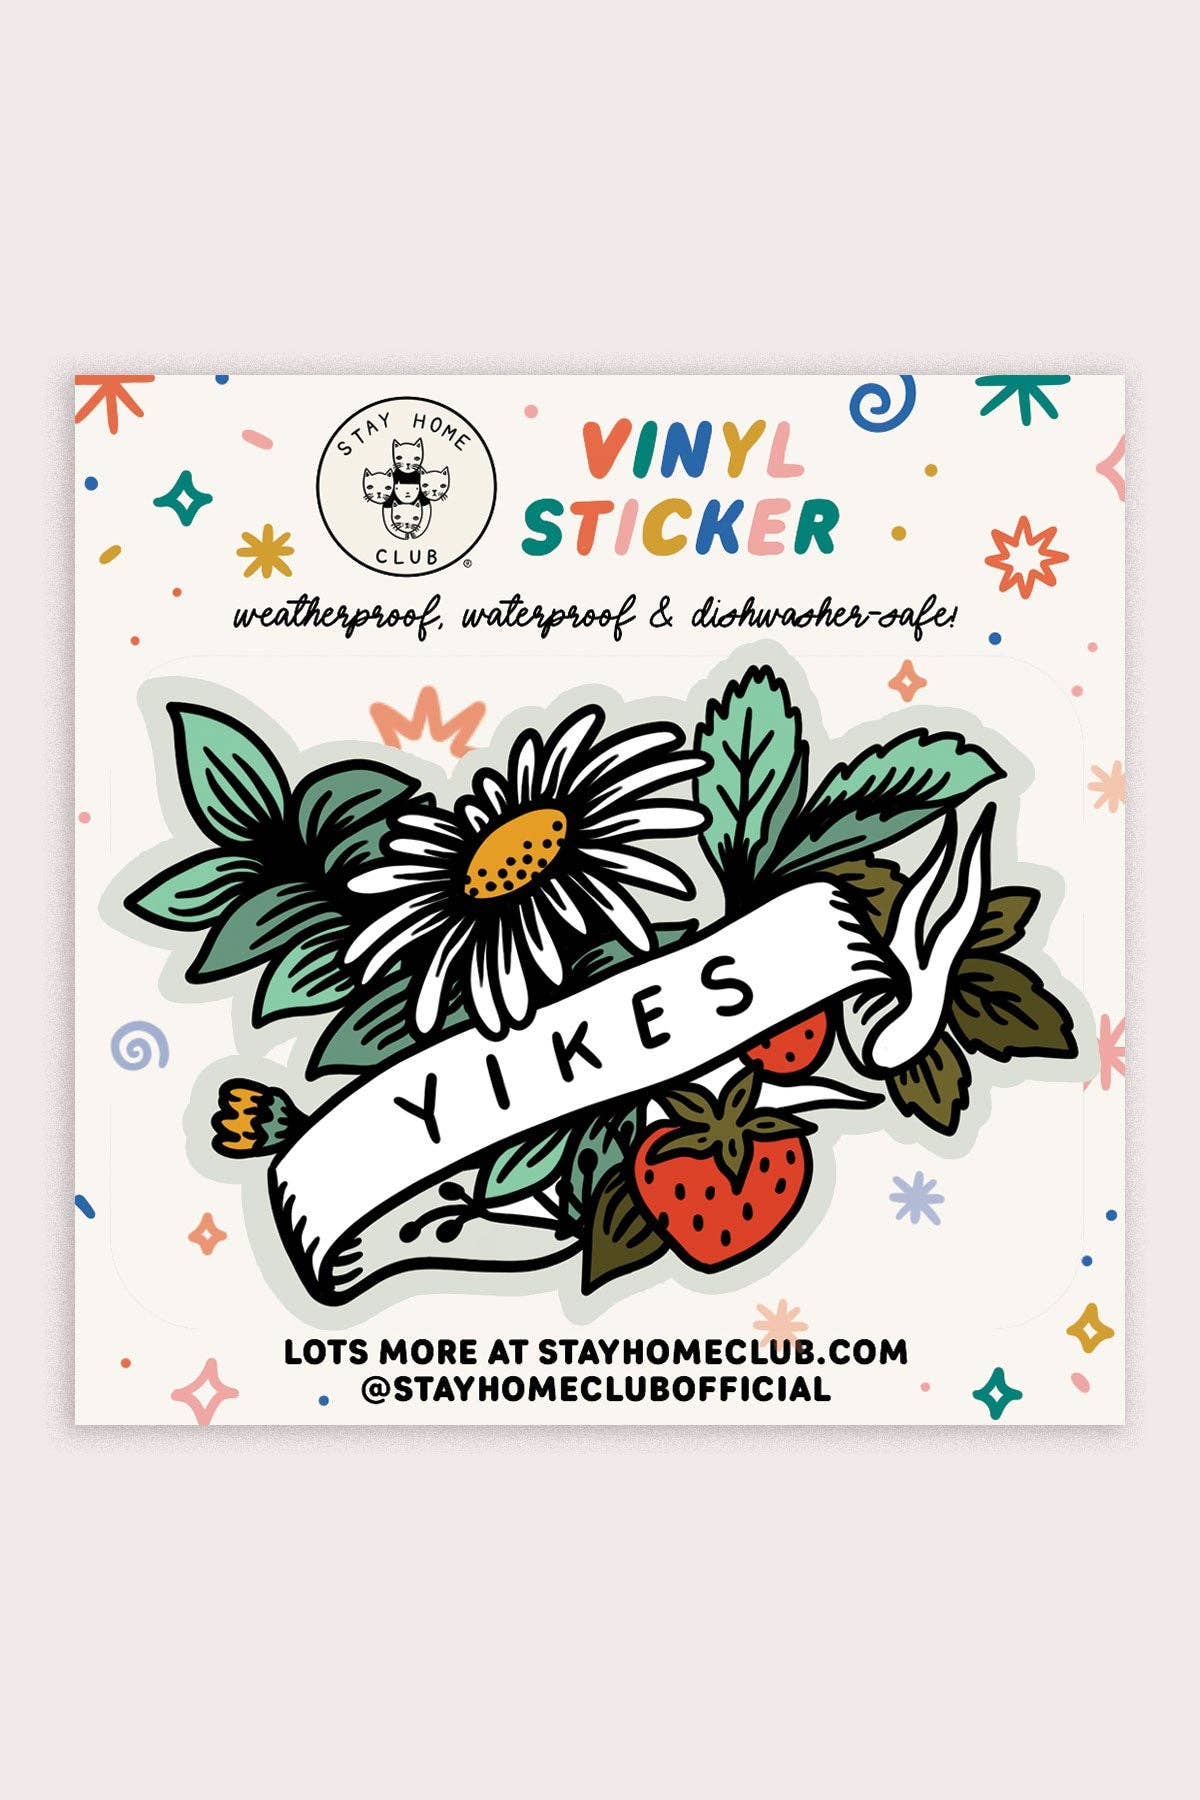 "Yikes" Vinyl Sticker